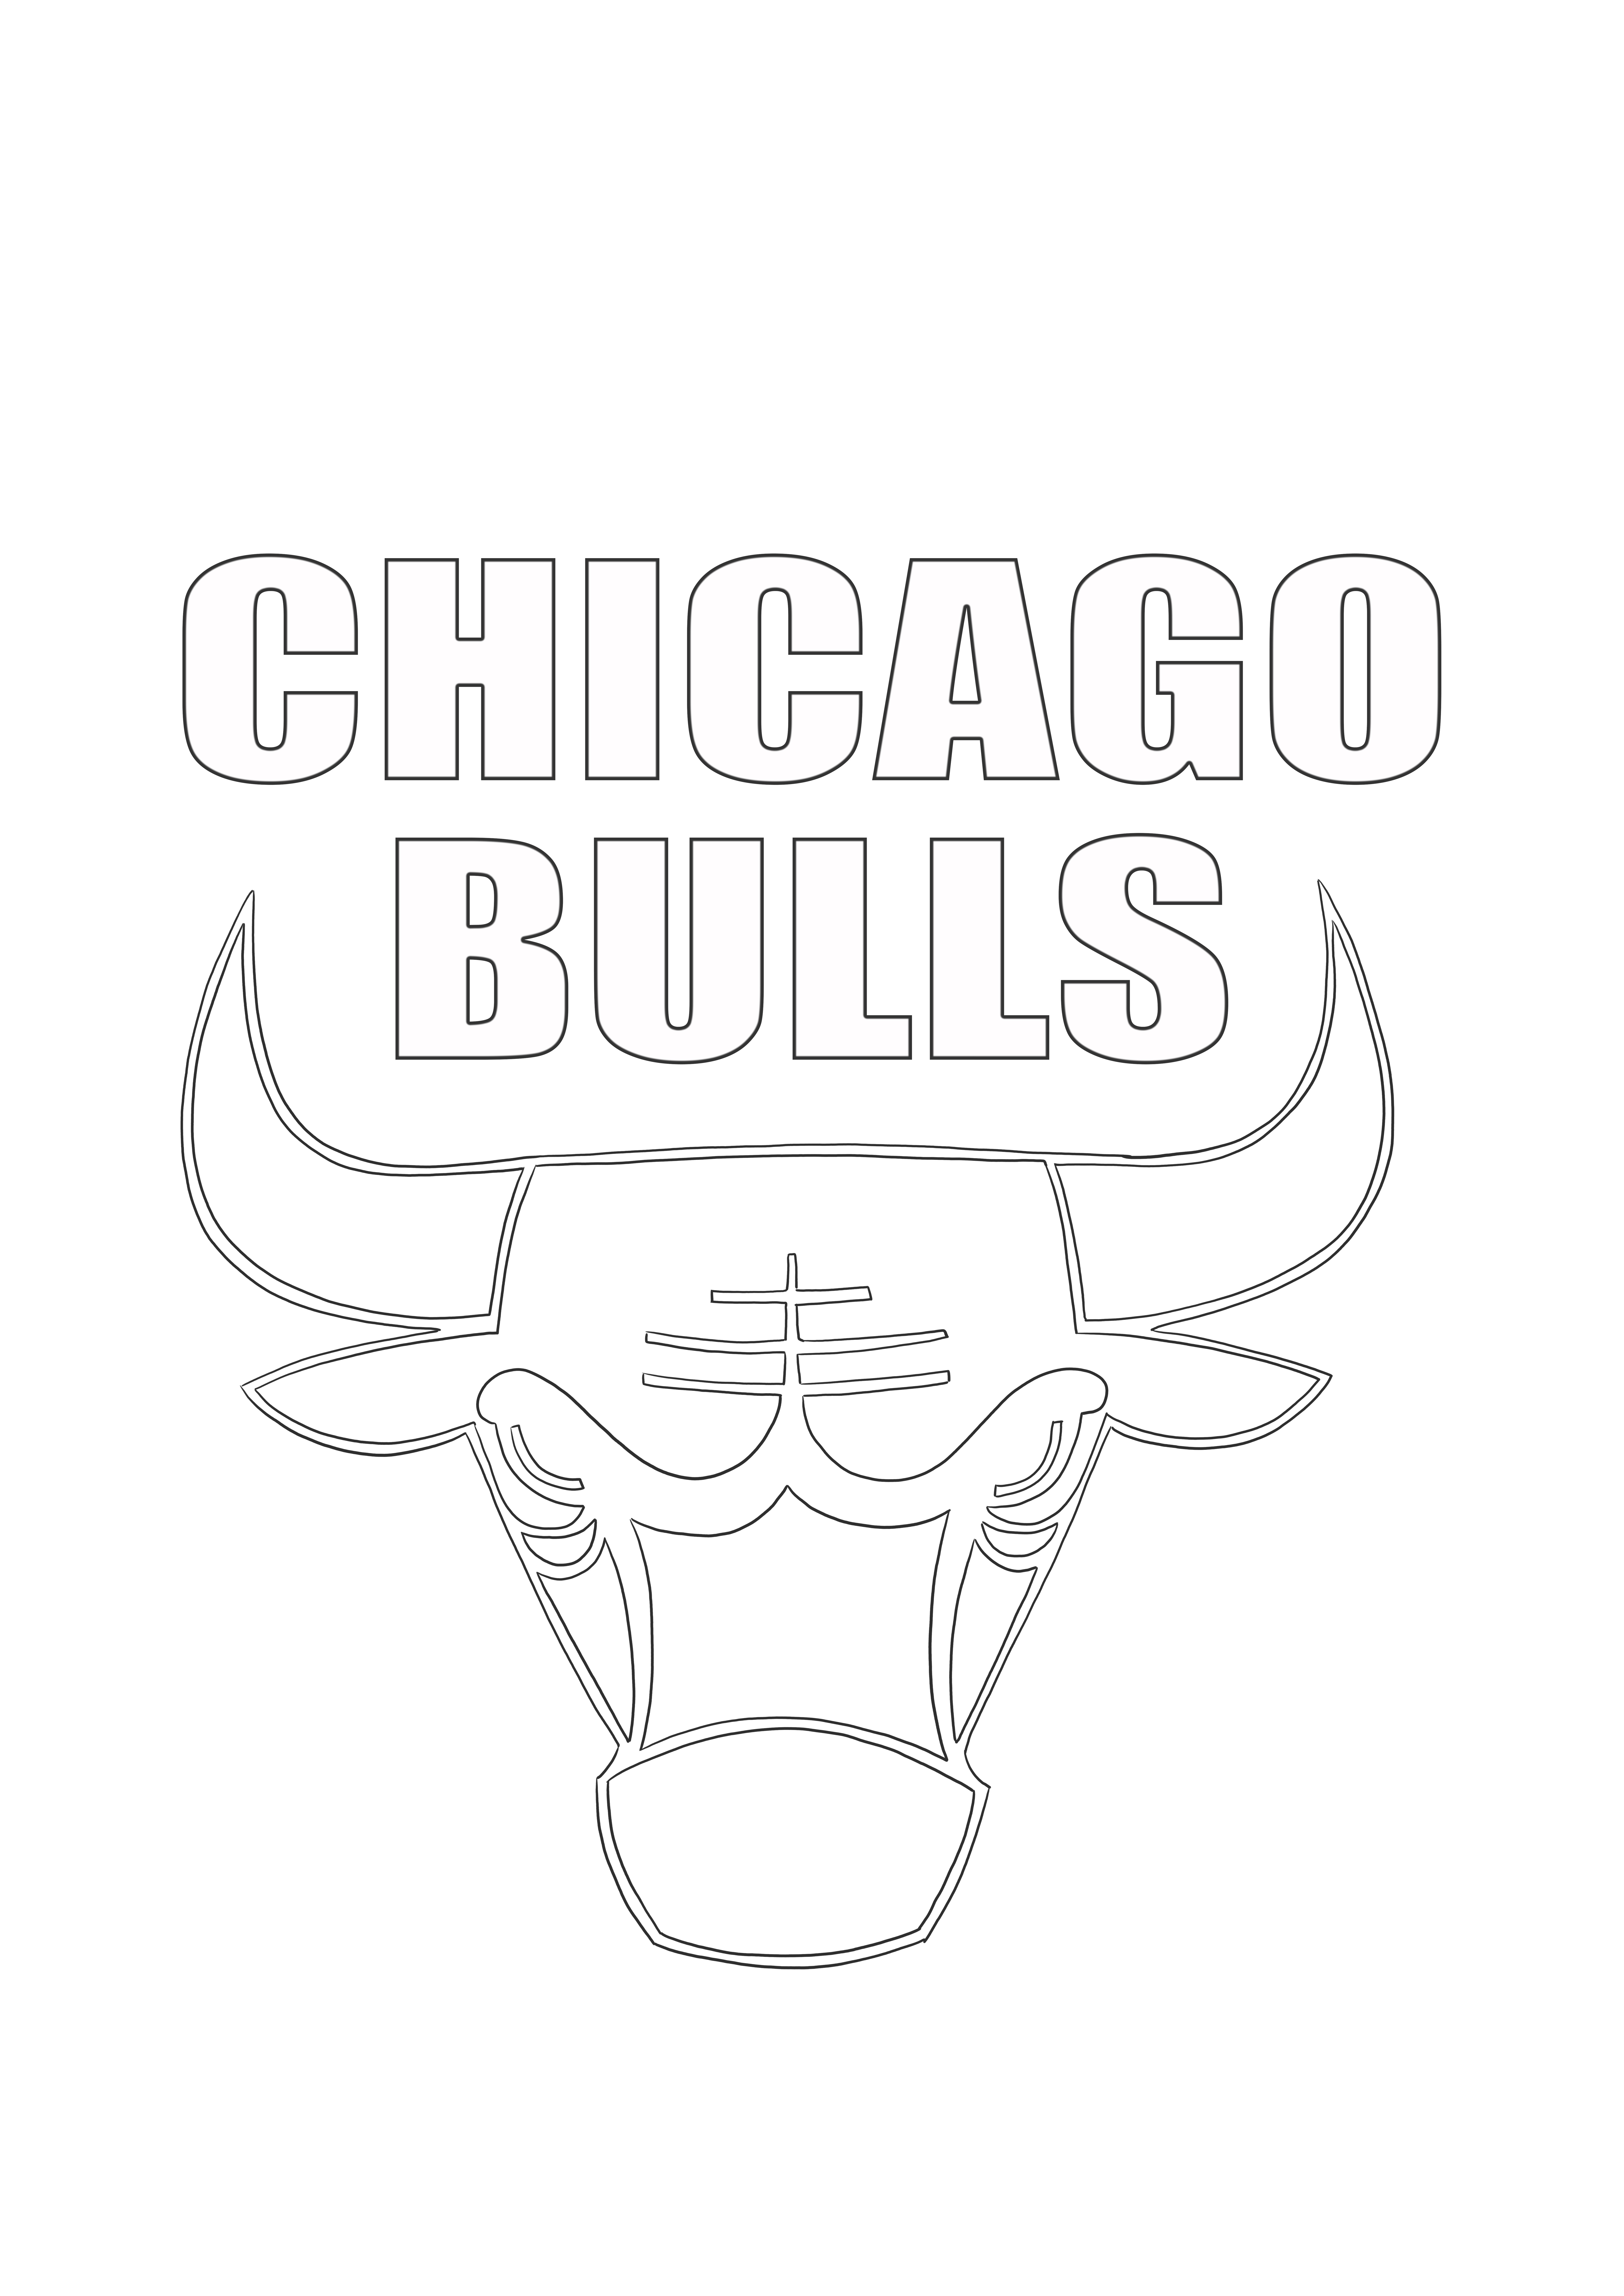 Logo des Chicago Bulls à colorier gratuit à imprimer et à colorier